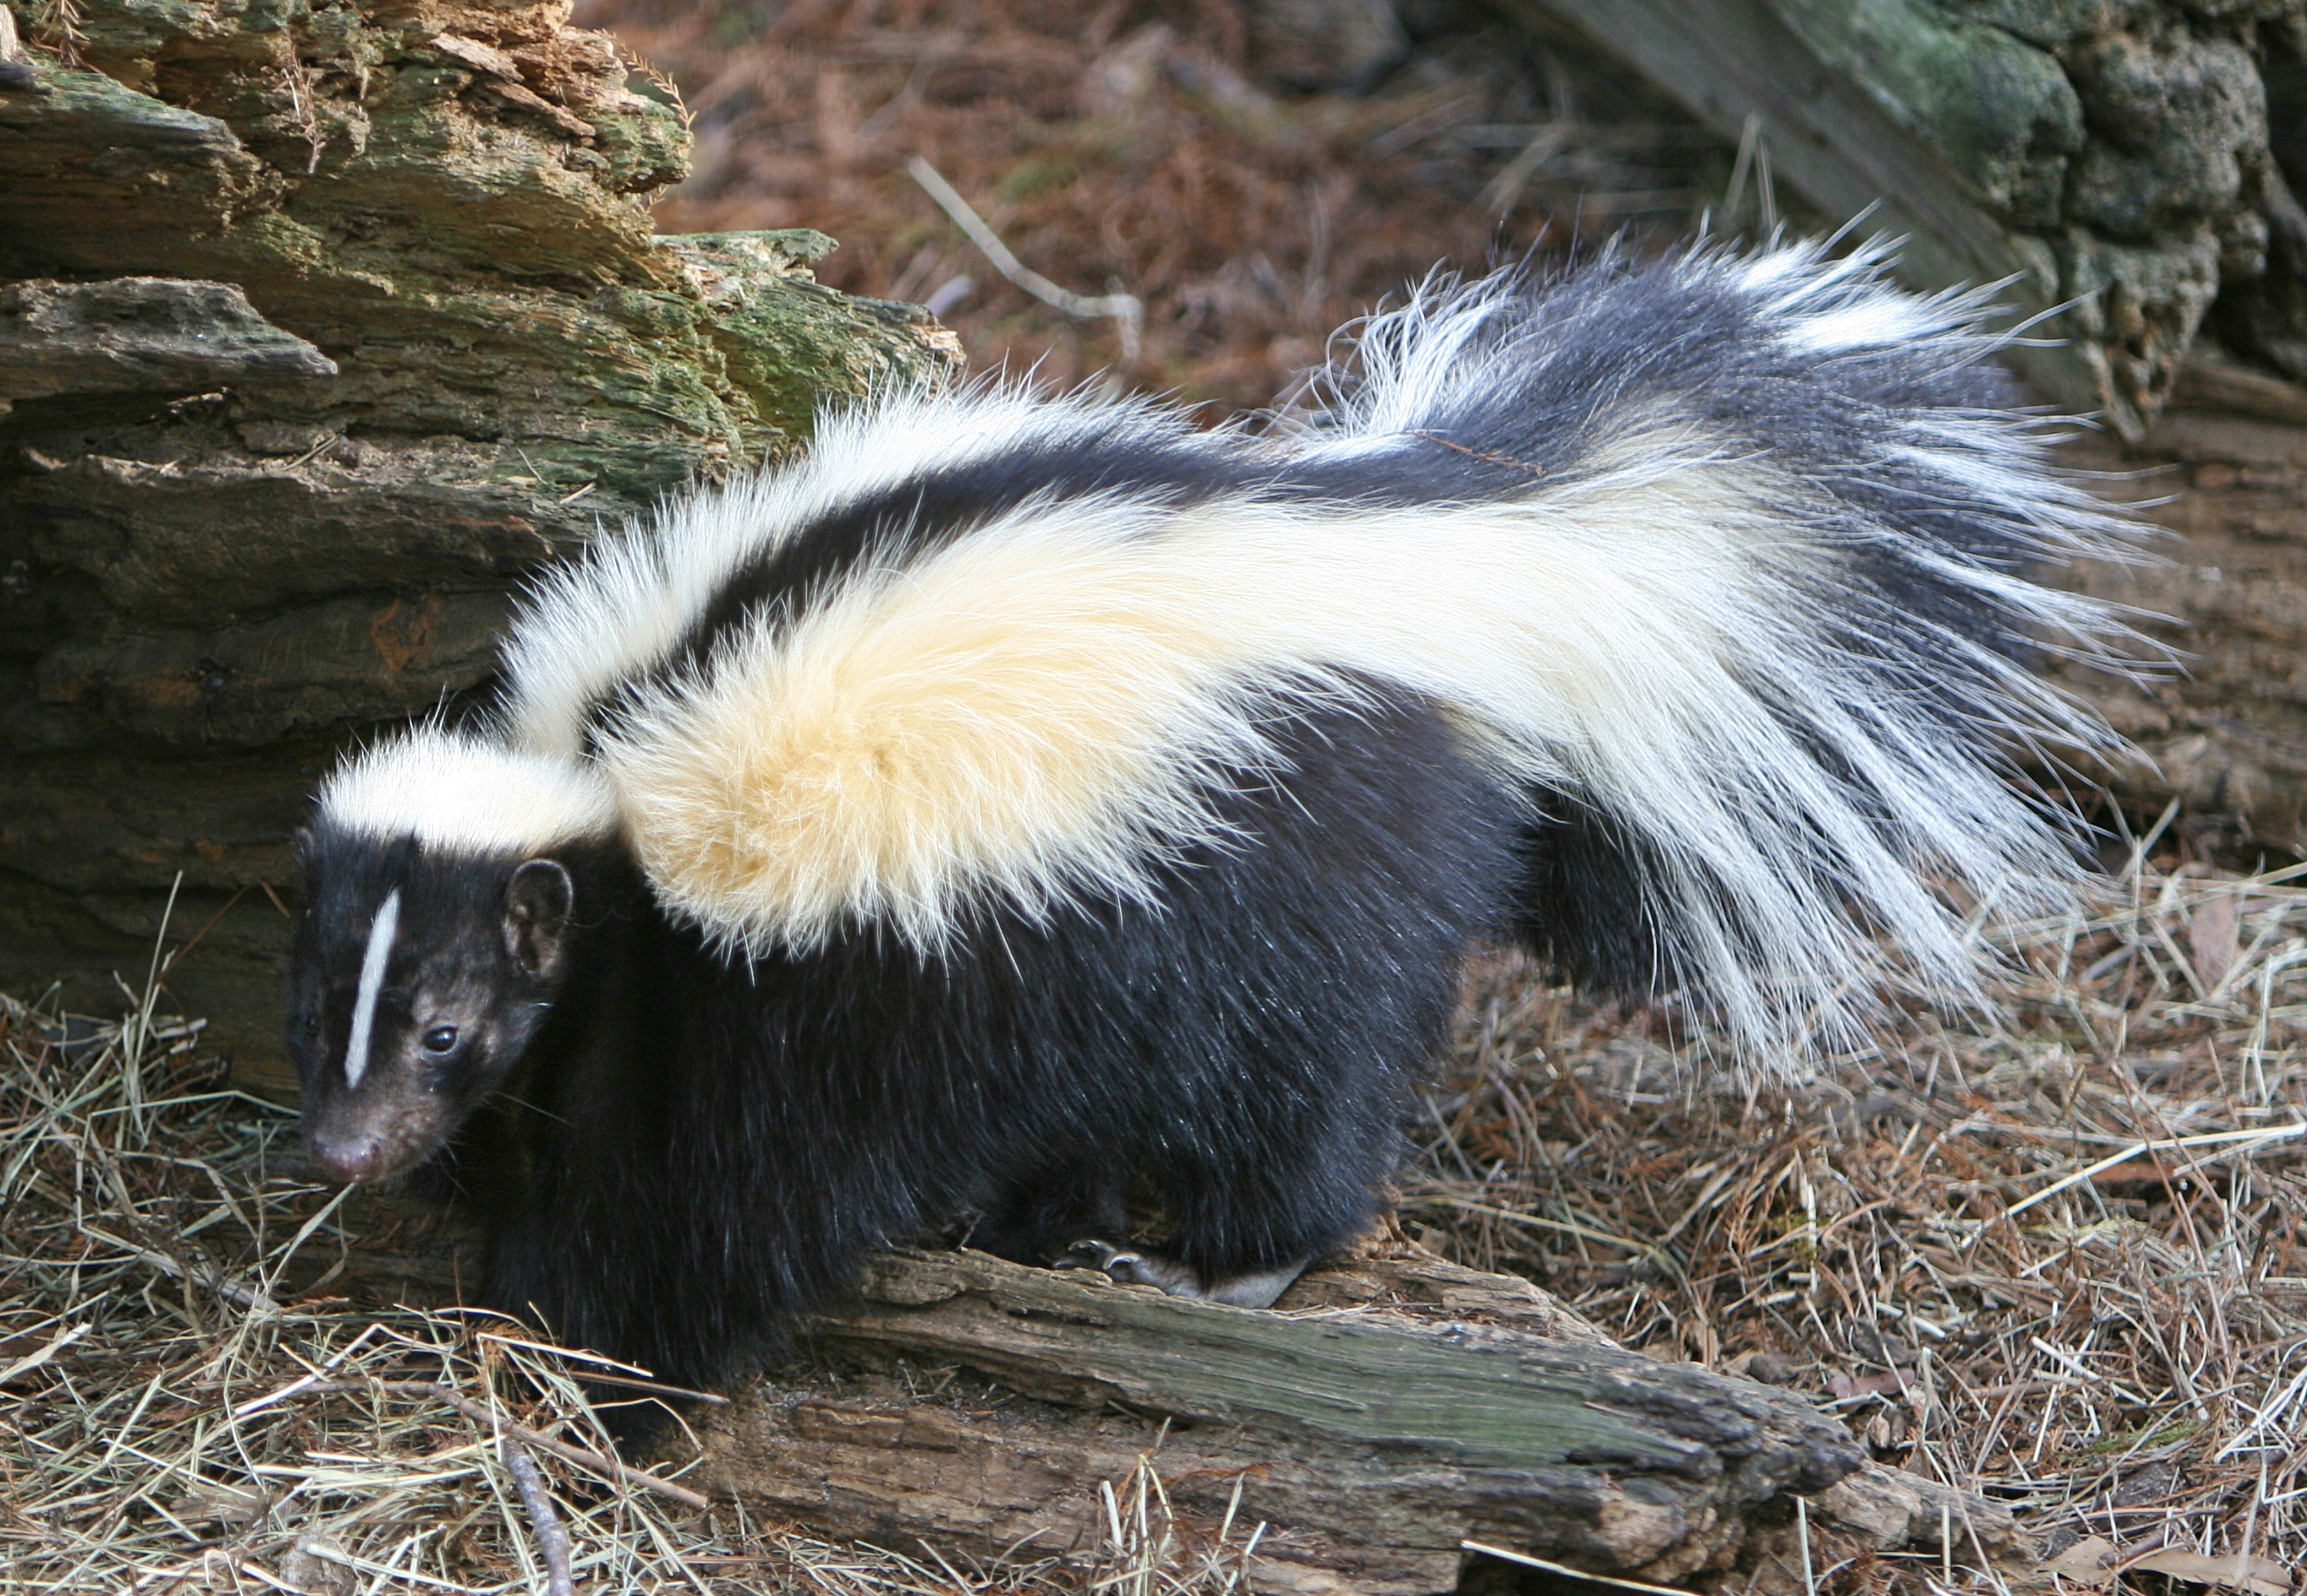 hibernating skunk - Clip Art Library